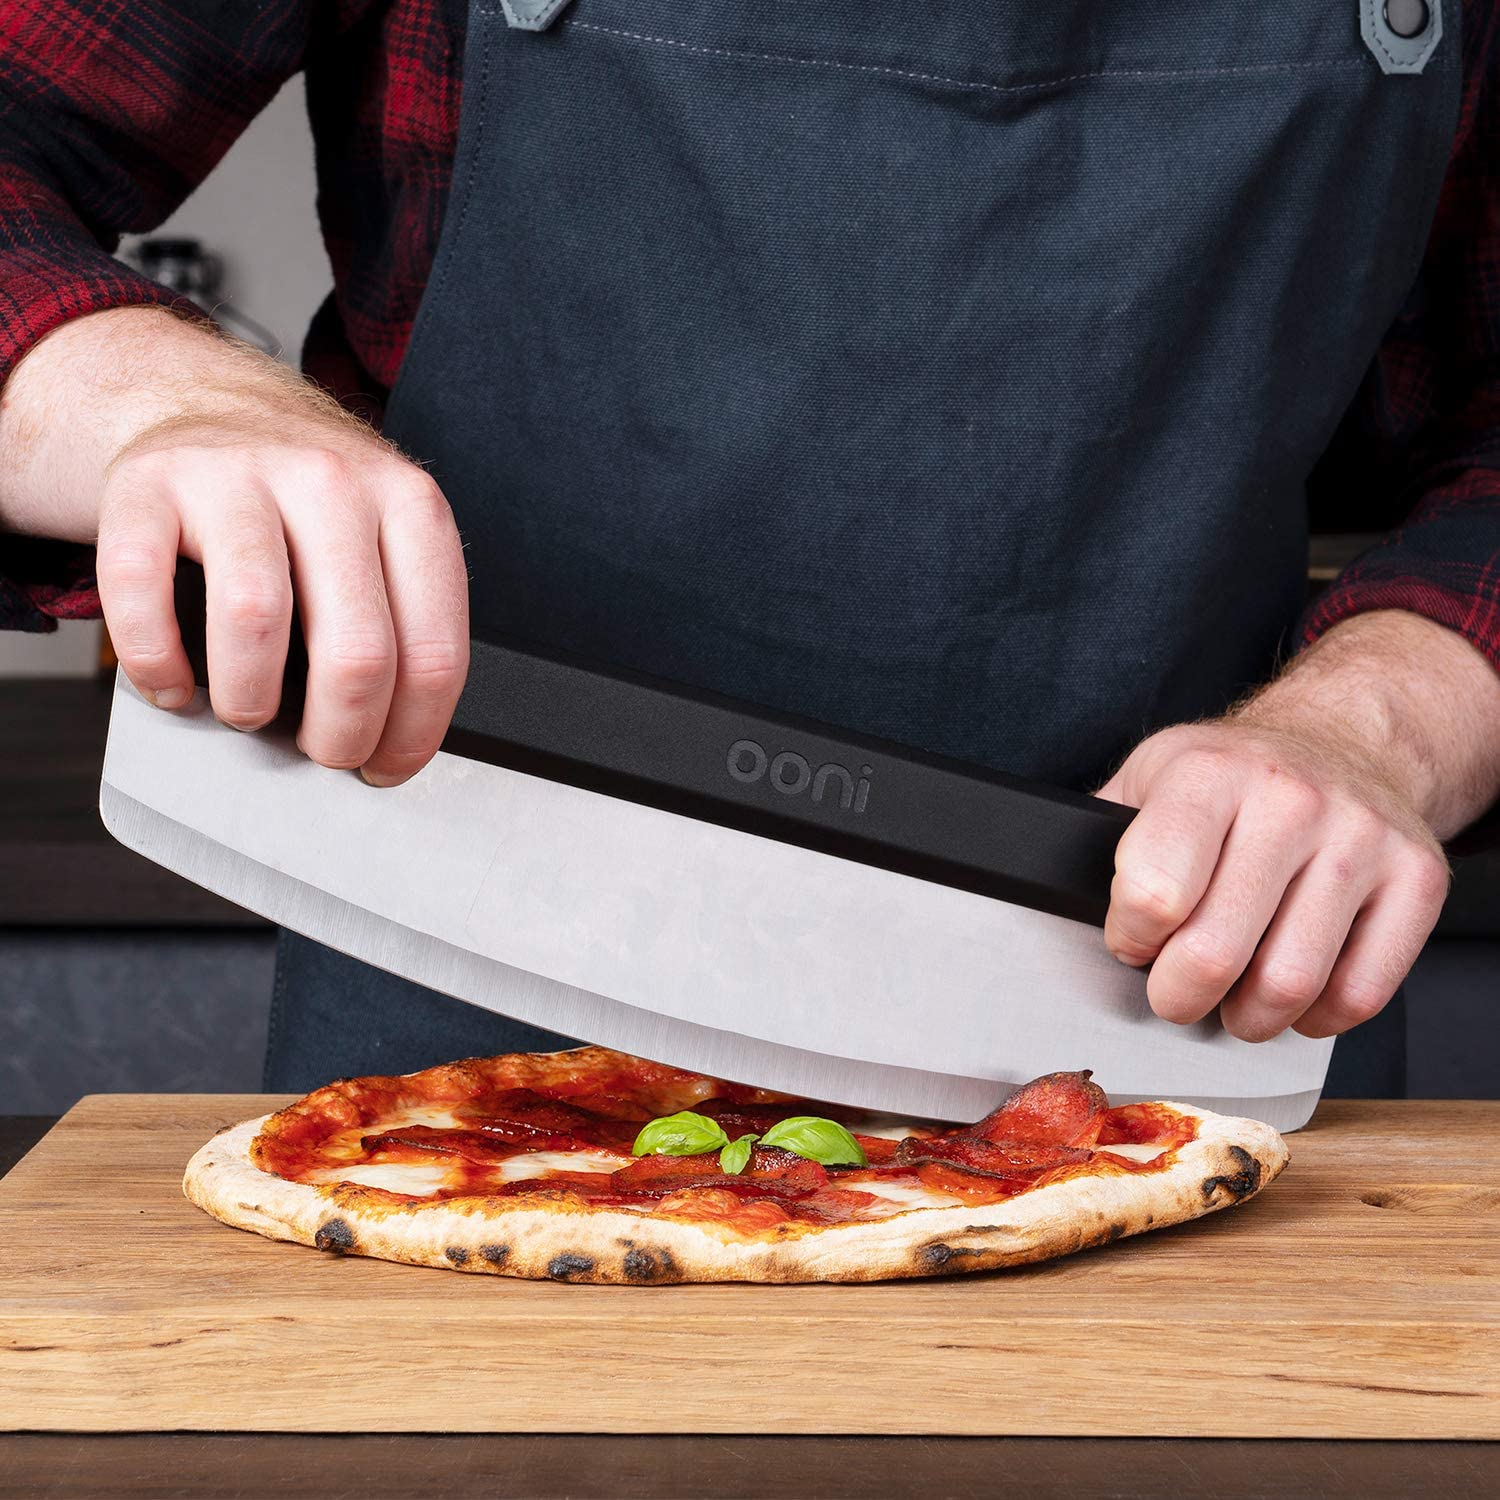 Couteau à Pizza - Runcook